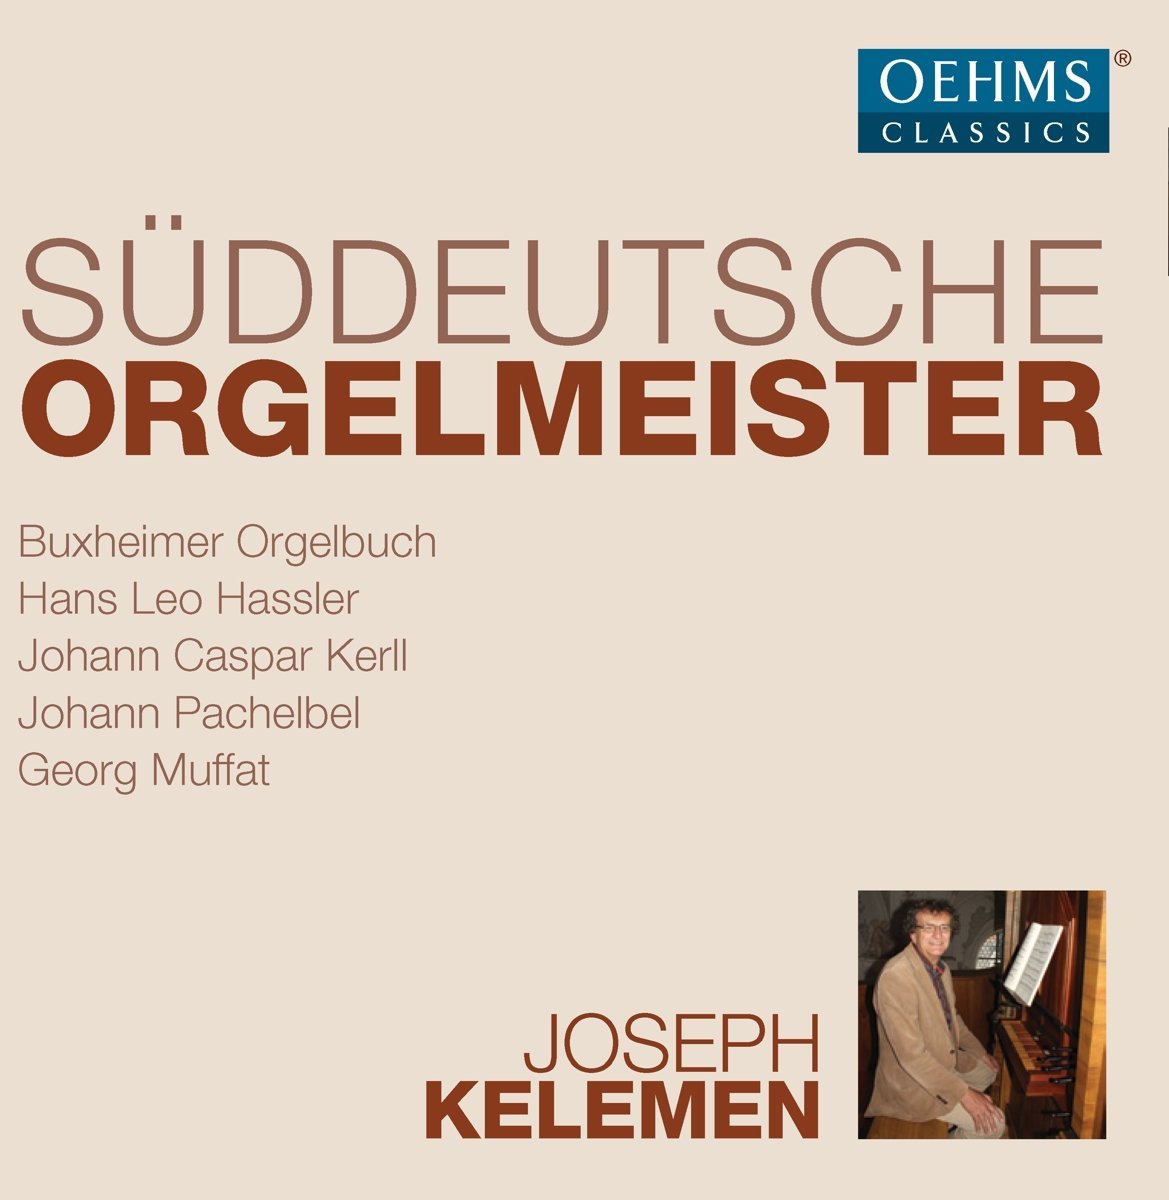 Audio Cd Suddeutsche Orgelmeister (6 Cd) NUOVO SIGILLATO, EDIZIONE DEL 02/03/2018 SUBITO DISPONIBILE